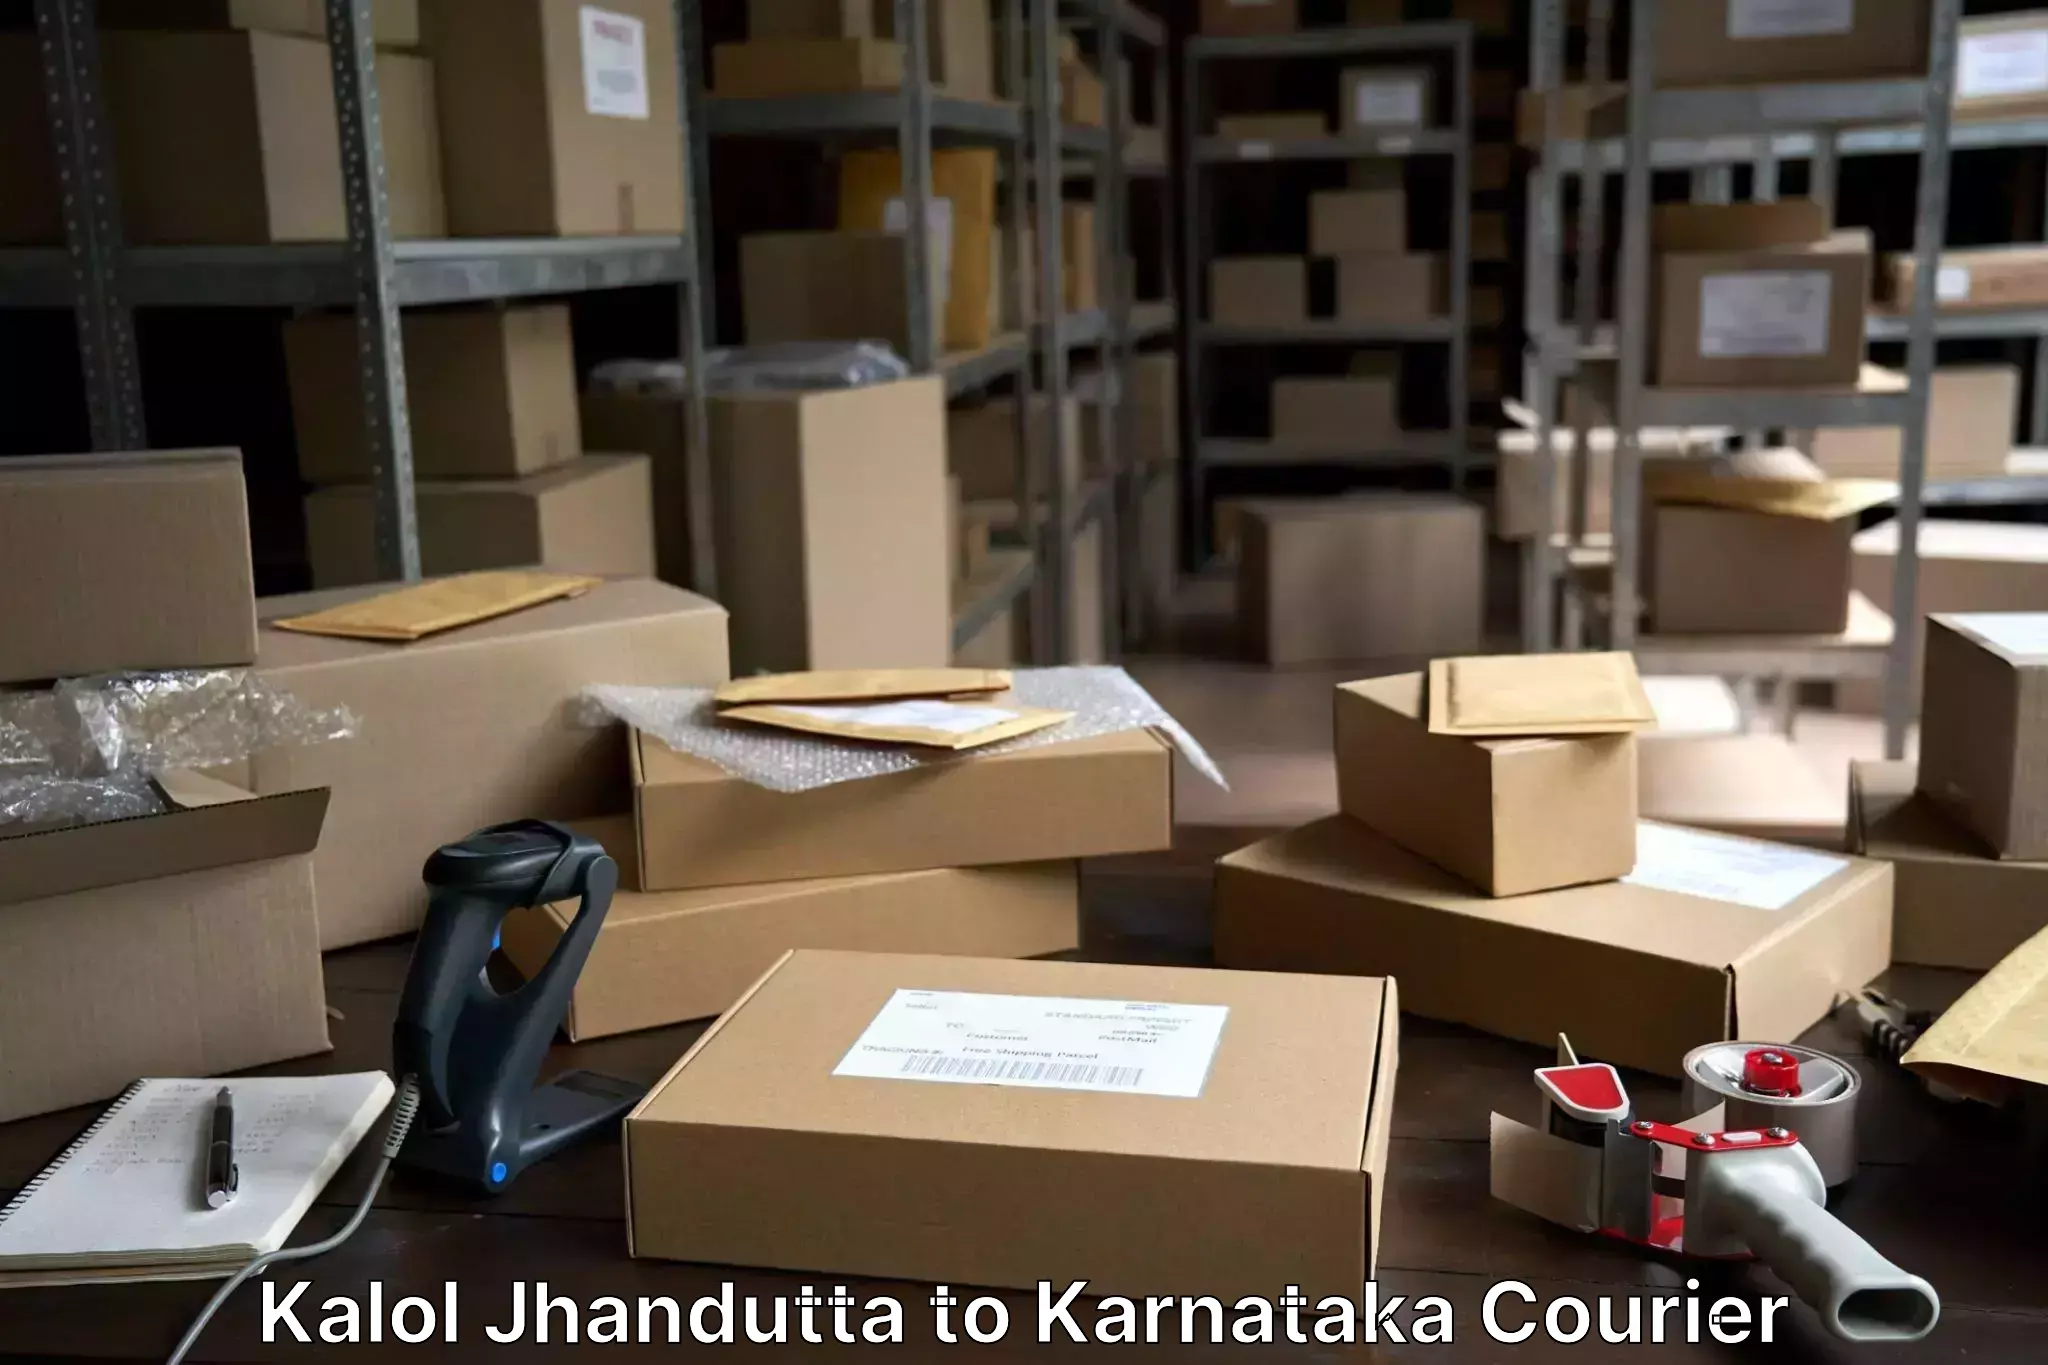 Reliable luggage courier Kalol Jhandutta to Heggadadevankote